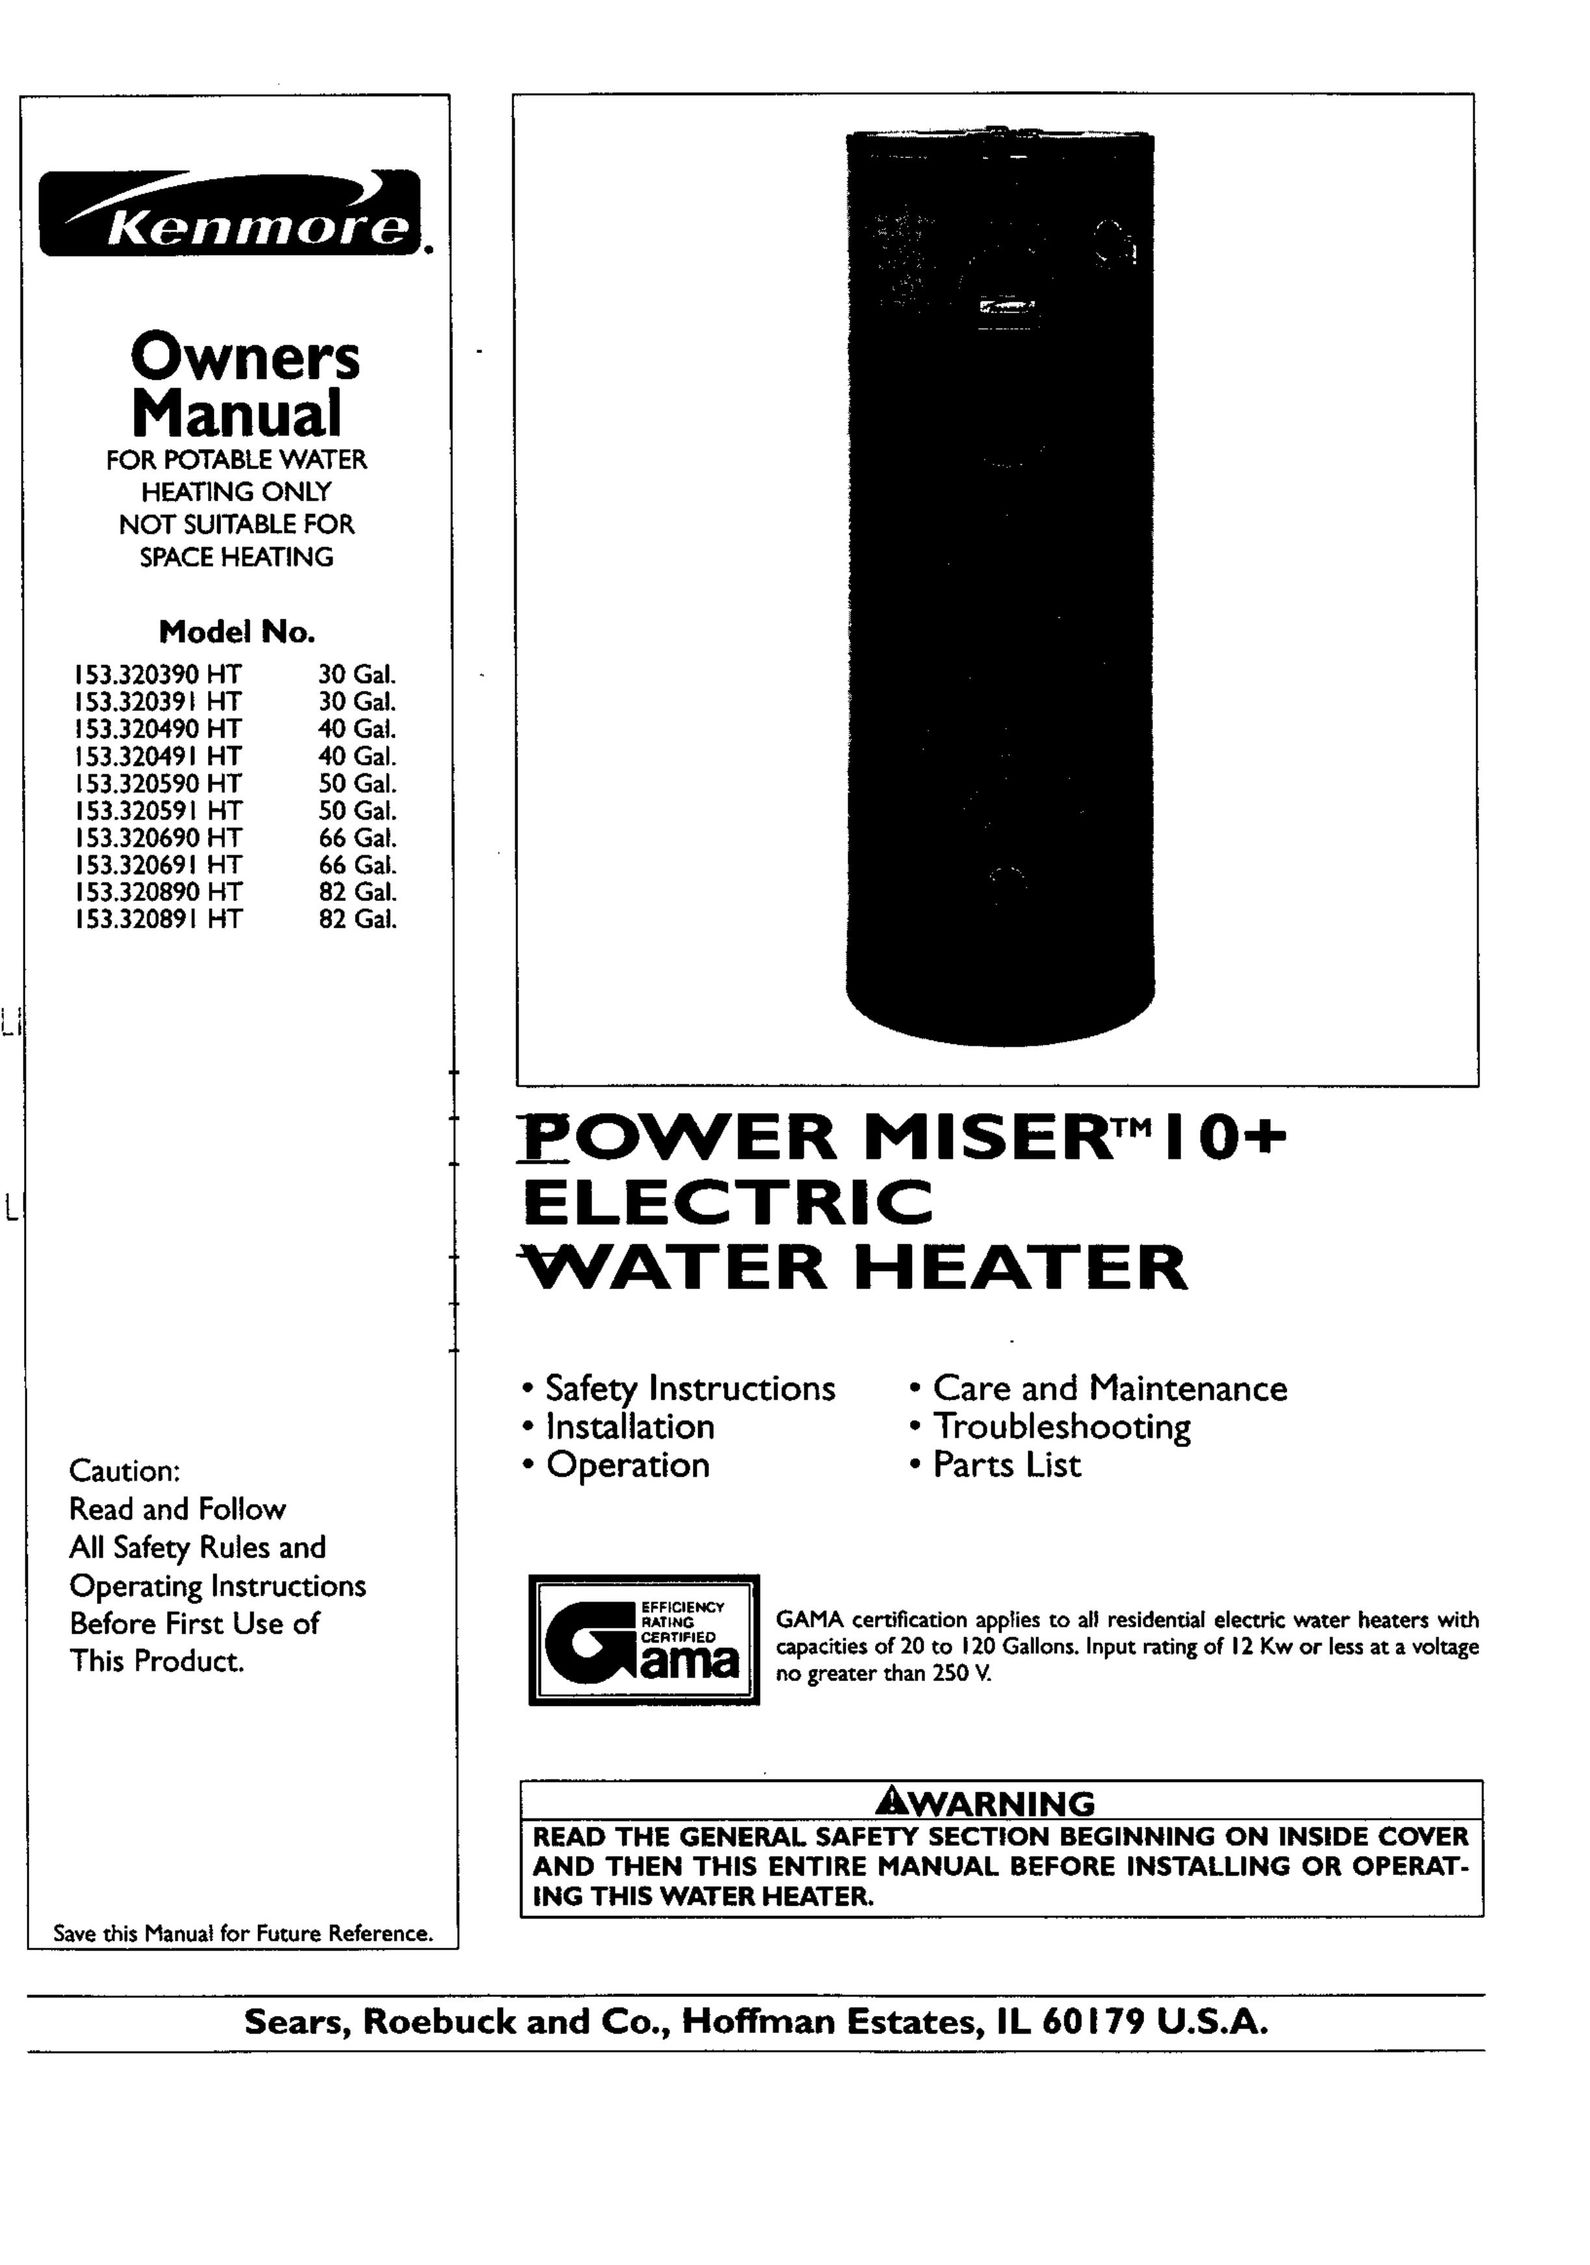 Kenmore 153.320591 HT 50 GAL Water Heater User Manual